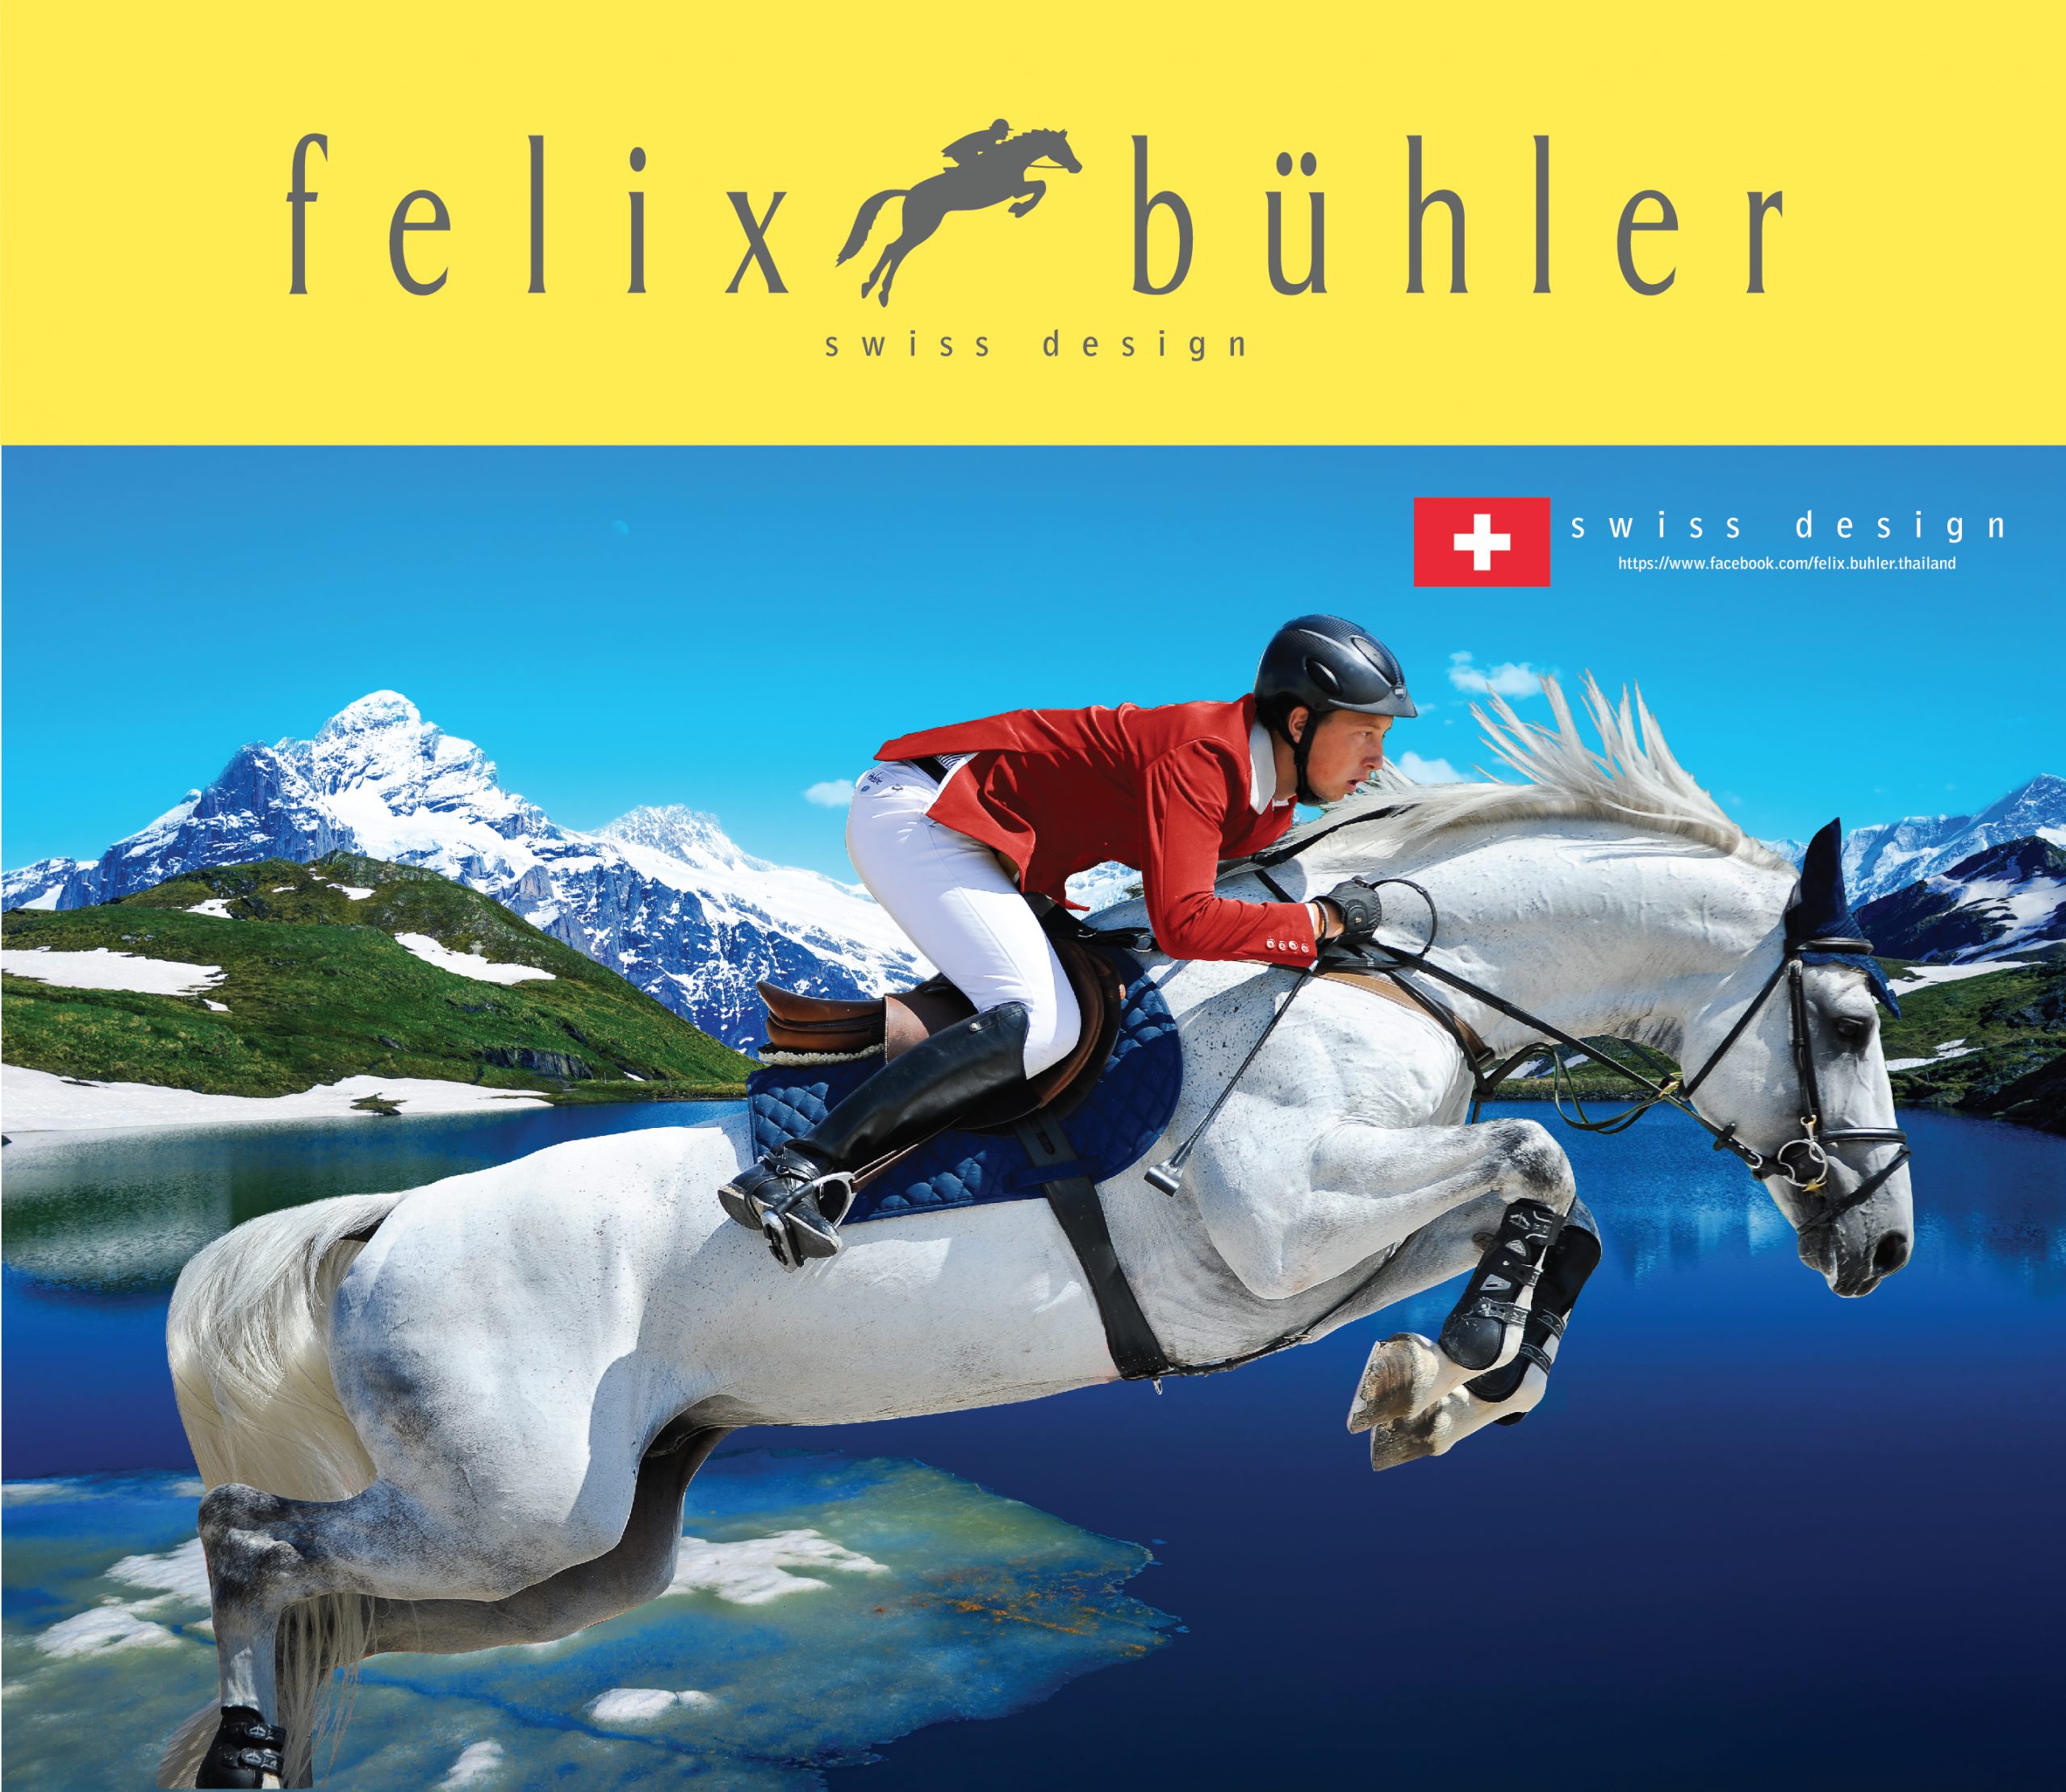 FELIX BUHLER เปิดตัวแบรนด์แอมบาสเดอร์คนล่าสุด มาร์ติน ฟูชส์ (MARTIN FUCHS) นักกีฬาขี่ม้า สัญชาติสวิส